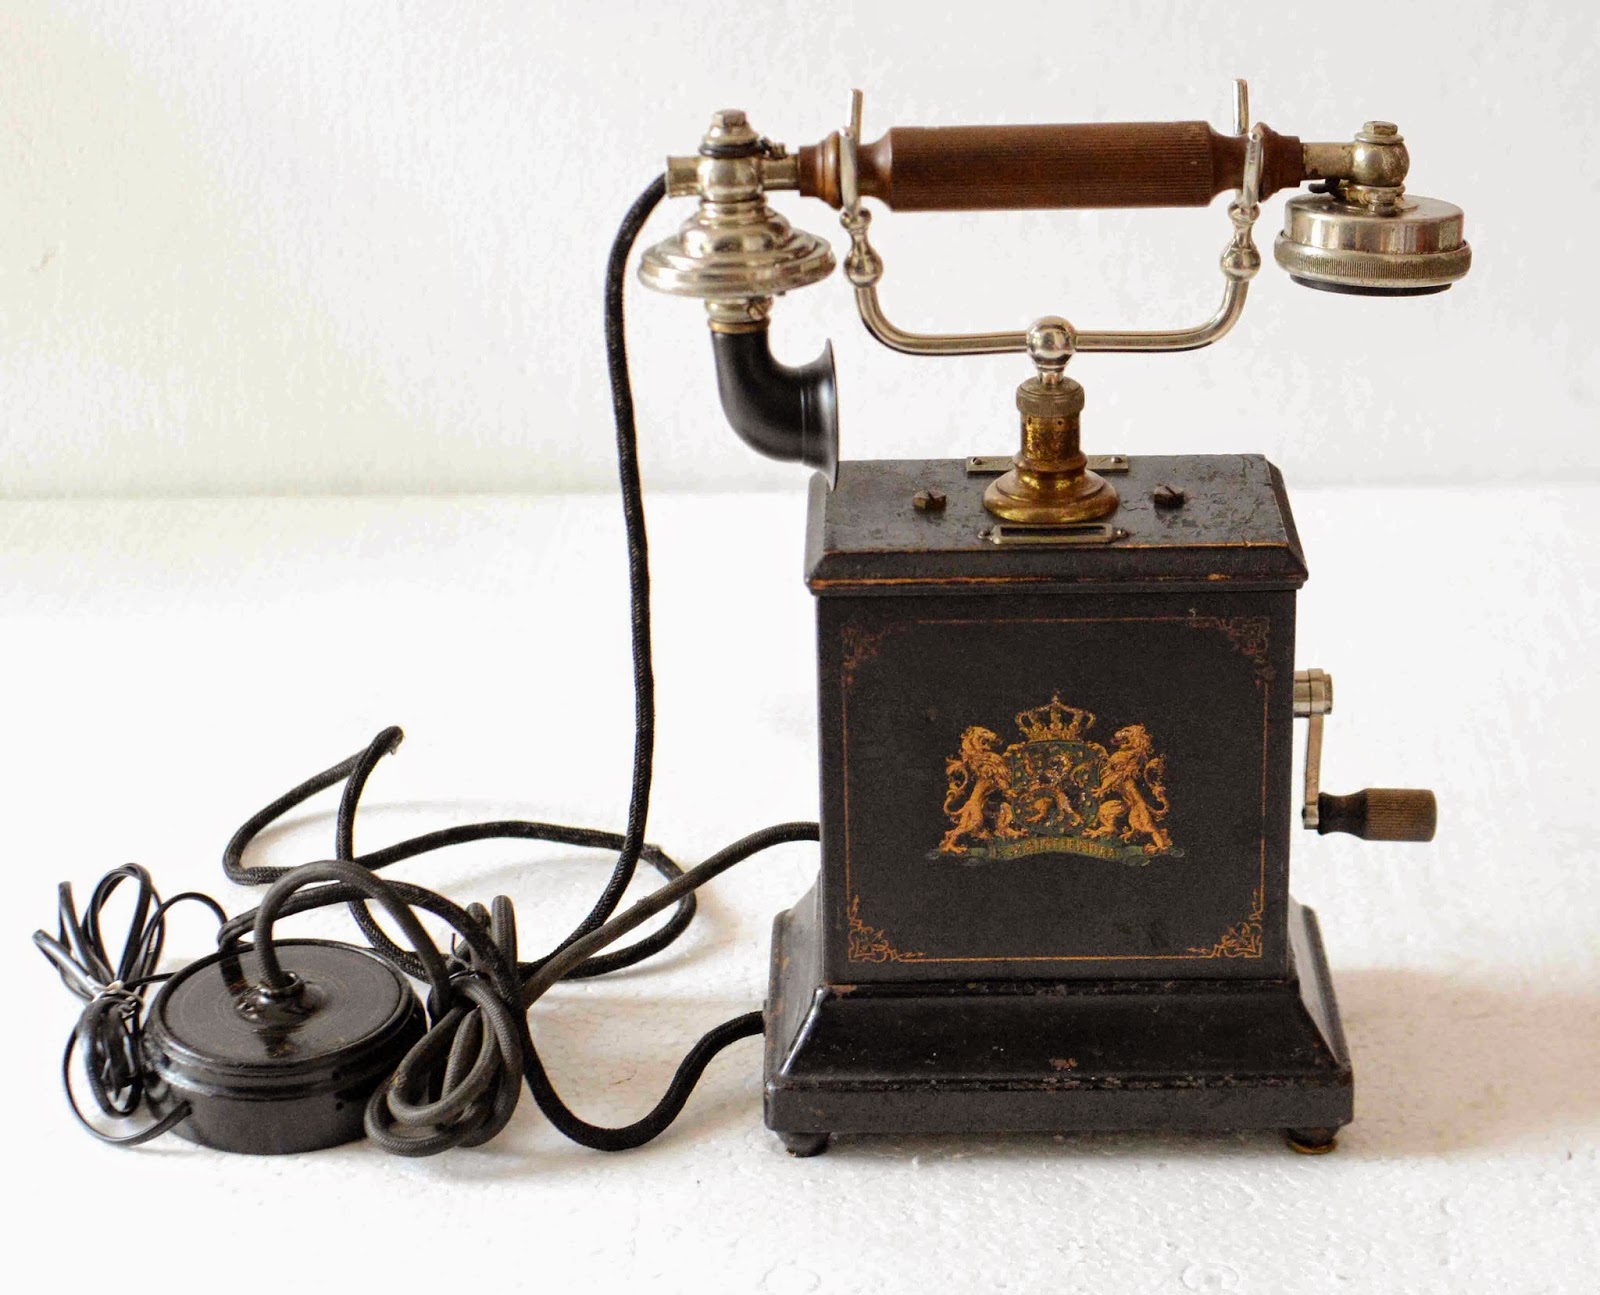 История телефона сегодня. Телефонный аппарат фирмы Эриксон 1895 год. Телефонный аппарат Бойля 1896. Телефонный аппарат Bell 300 Дрейфус. Телефонный аппарат 19 век Белл.